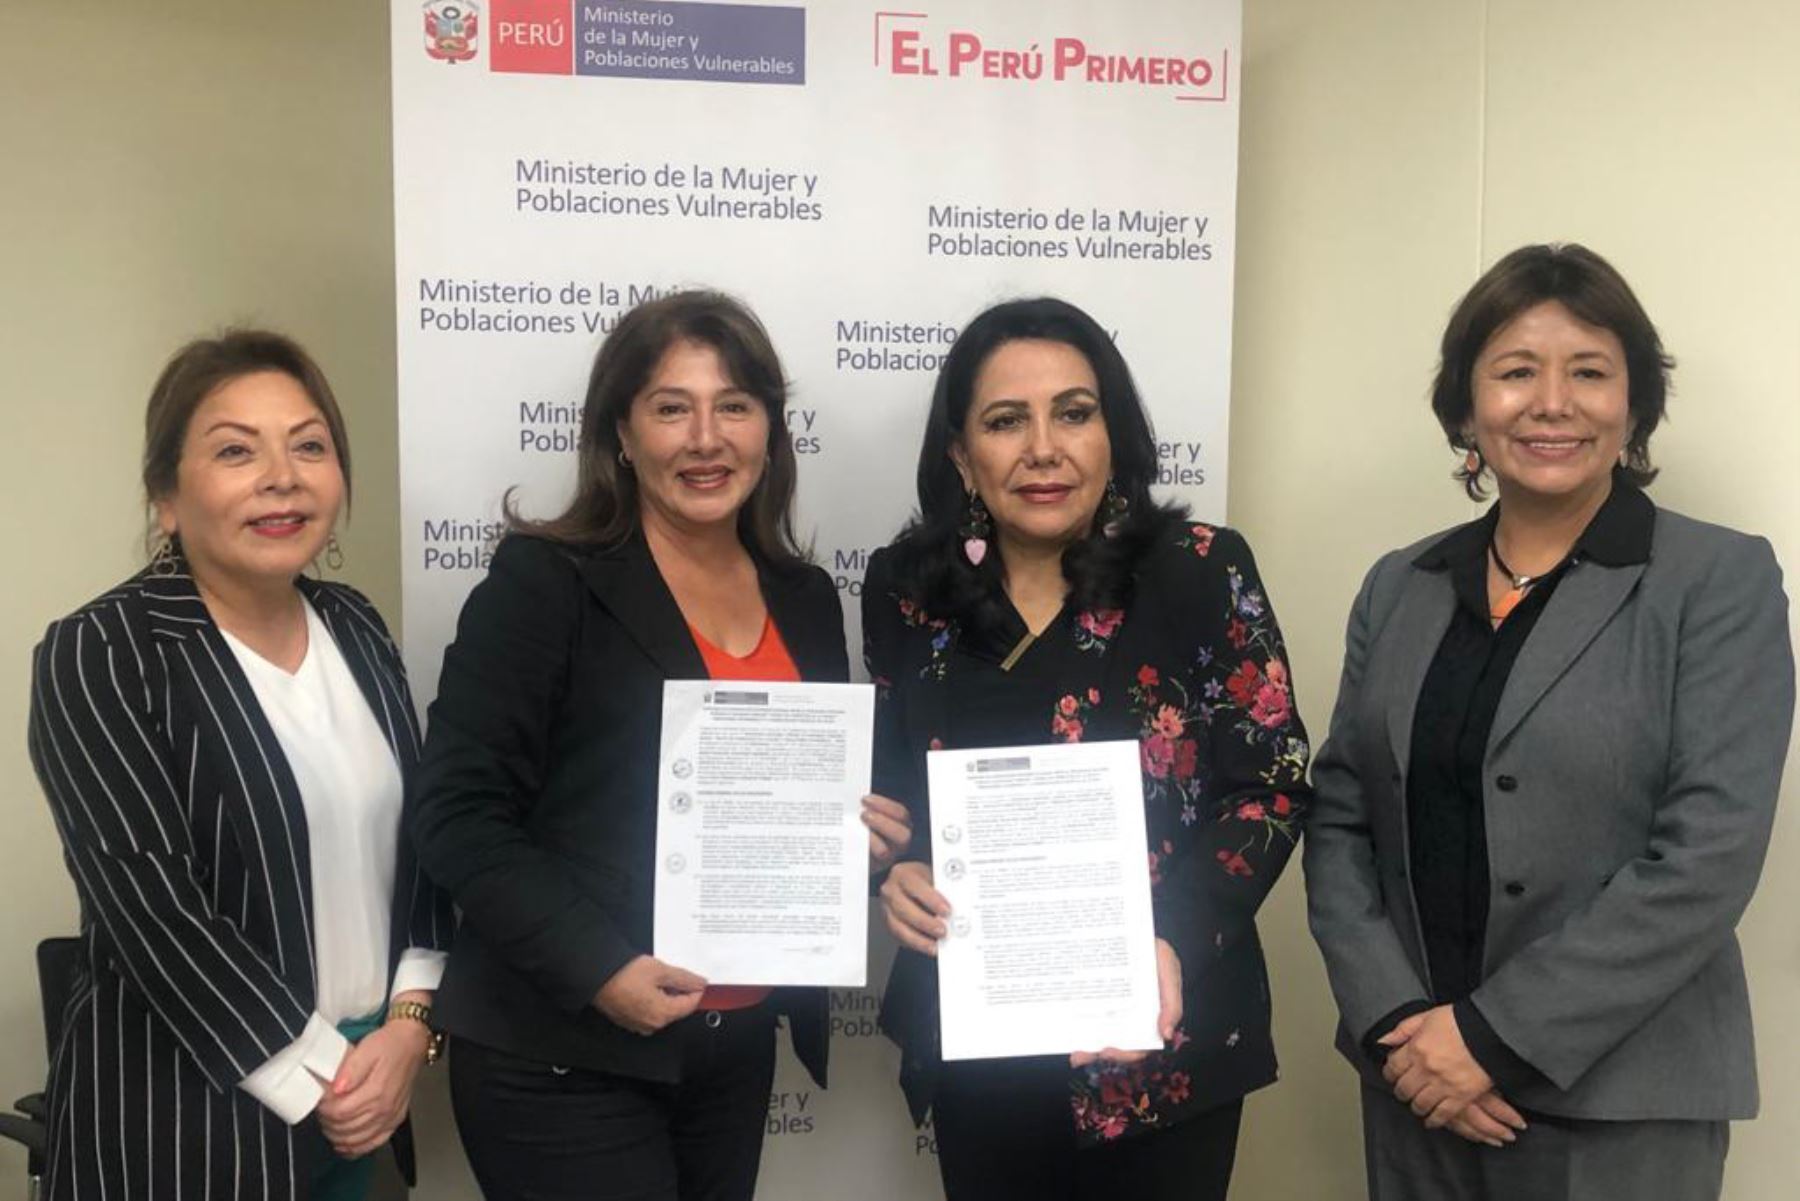 La titular del Mimp, Gloria Montenegro, y la alcaldesa distrital de Uchiza, Doli Gonzales, firmaron un convenio de cooperación para la instalación e implementación de un CEM.